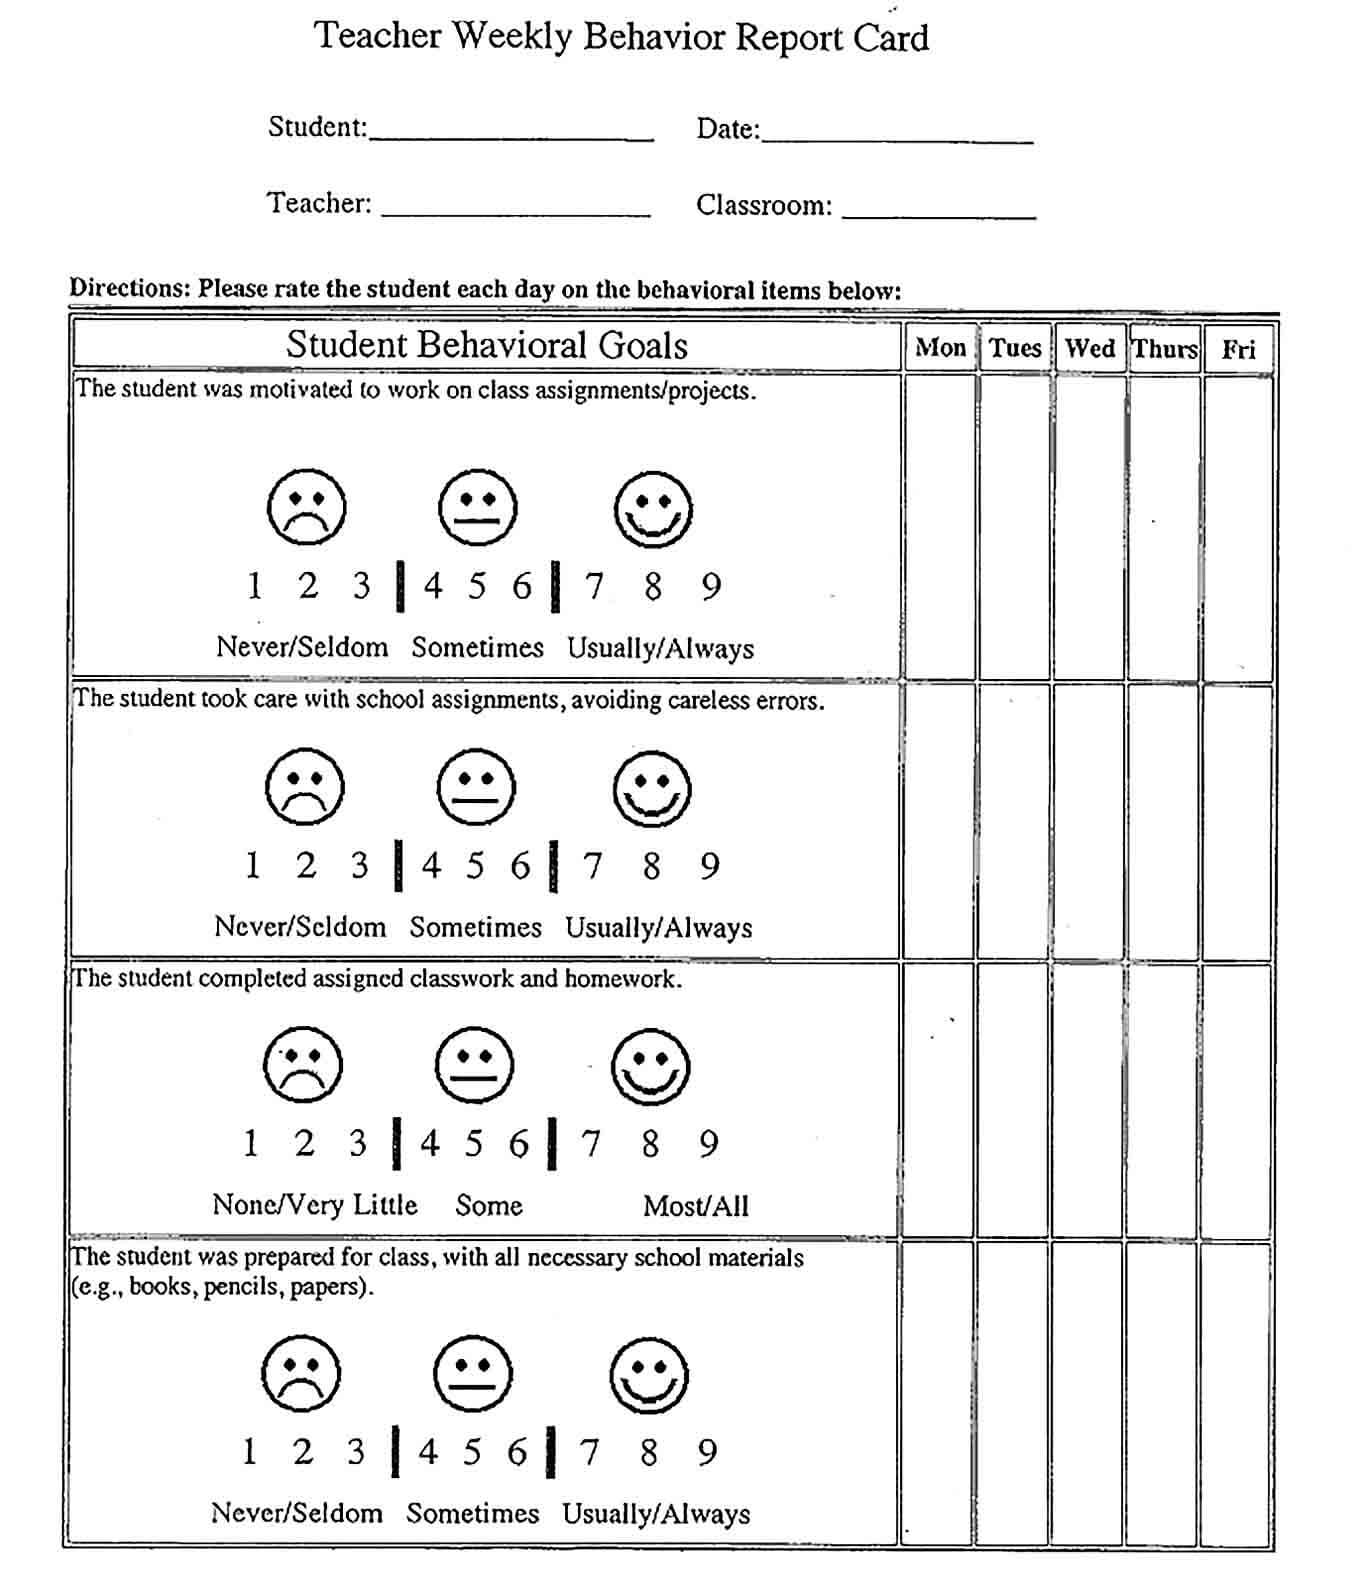 Sample Teacher Weekly Behavior Report